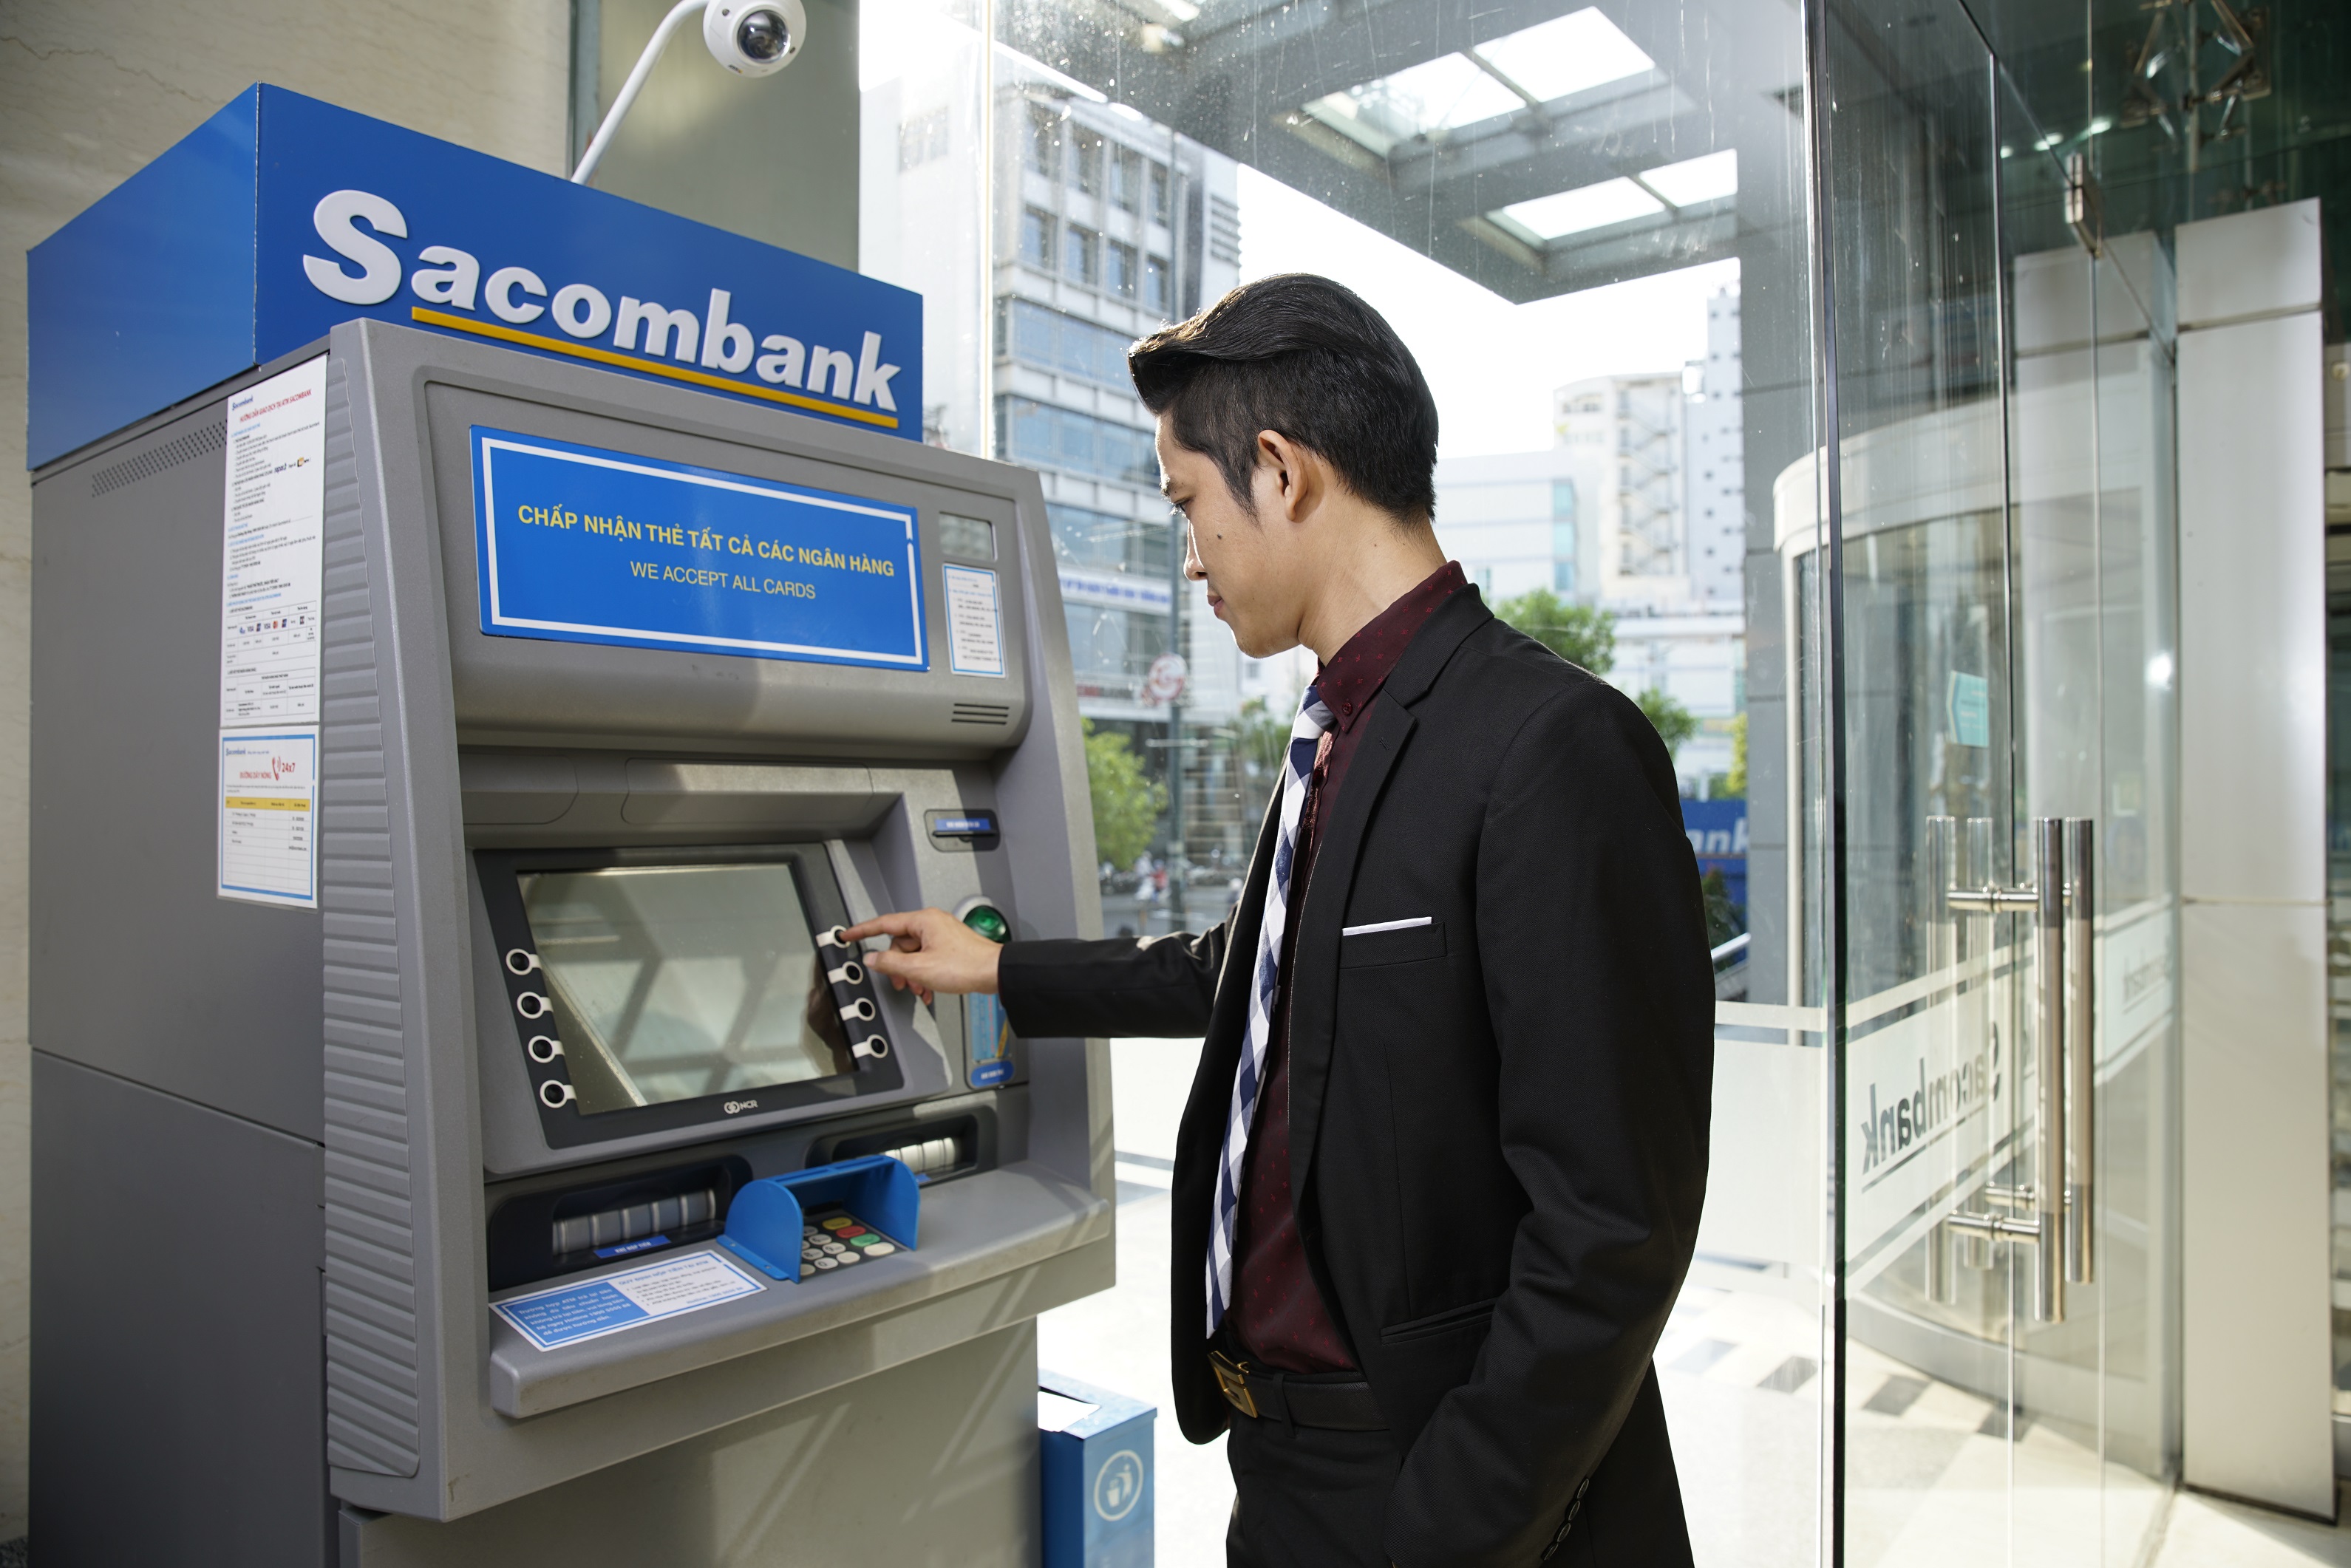 Sacombank hoàn tất bảo trì và nâng cấp hệ thống thẻ với nhiều tiện ích hiện đại